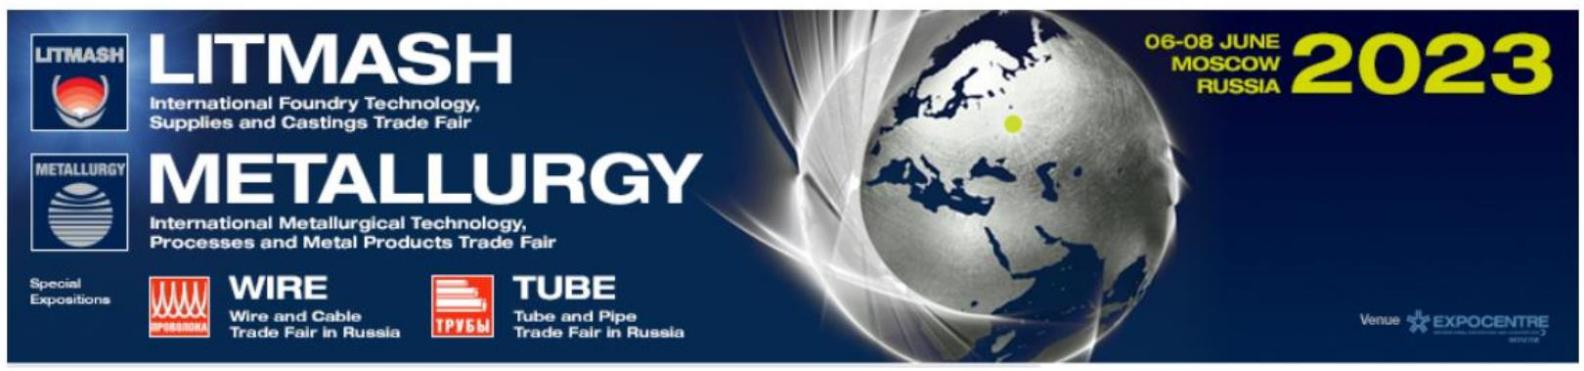 2024 年俄罗斯国际冶金、铸造、铝和有色金属,材料,技术和产品展览会